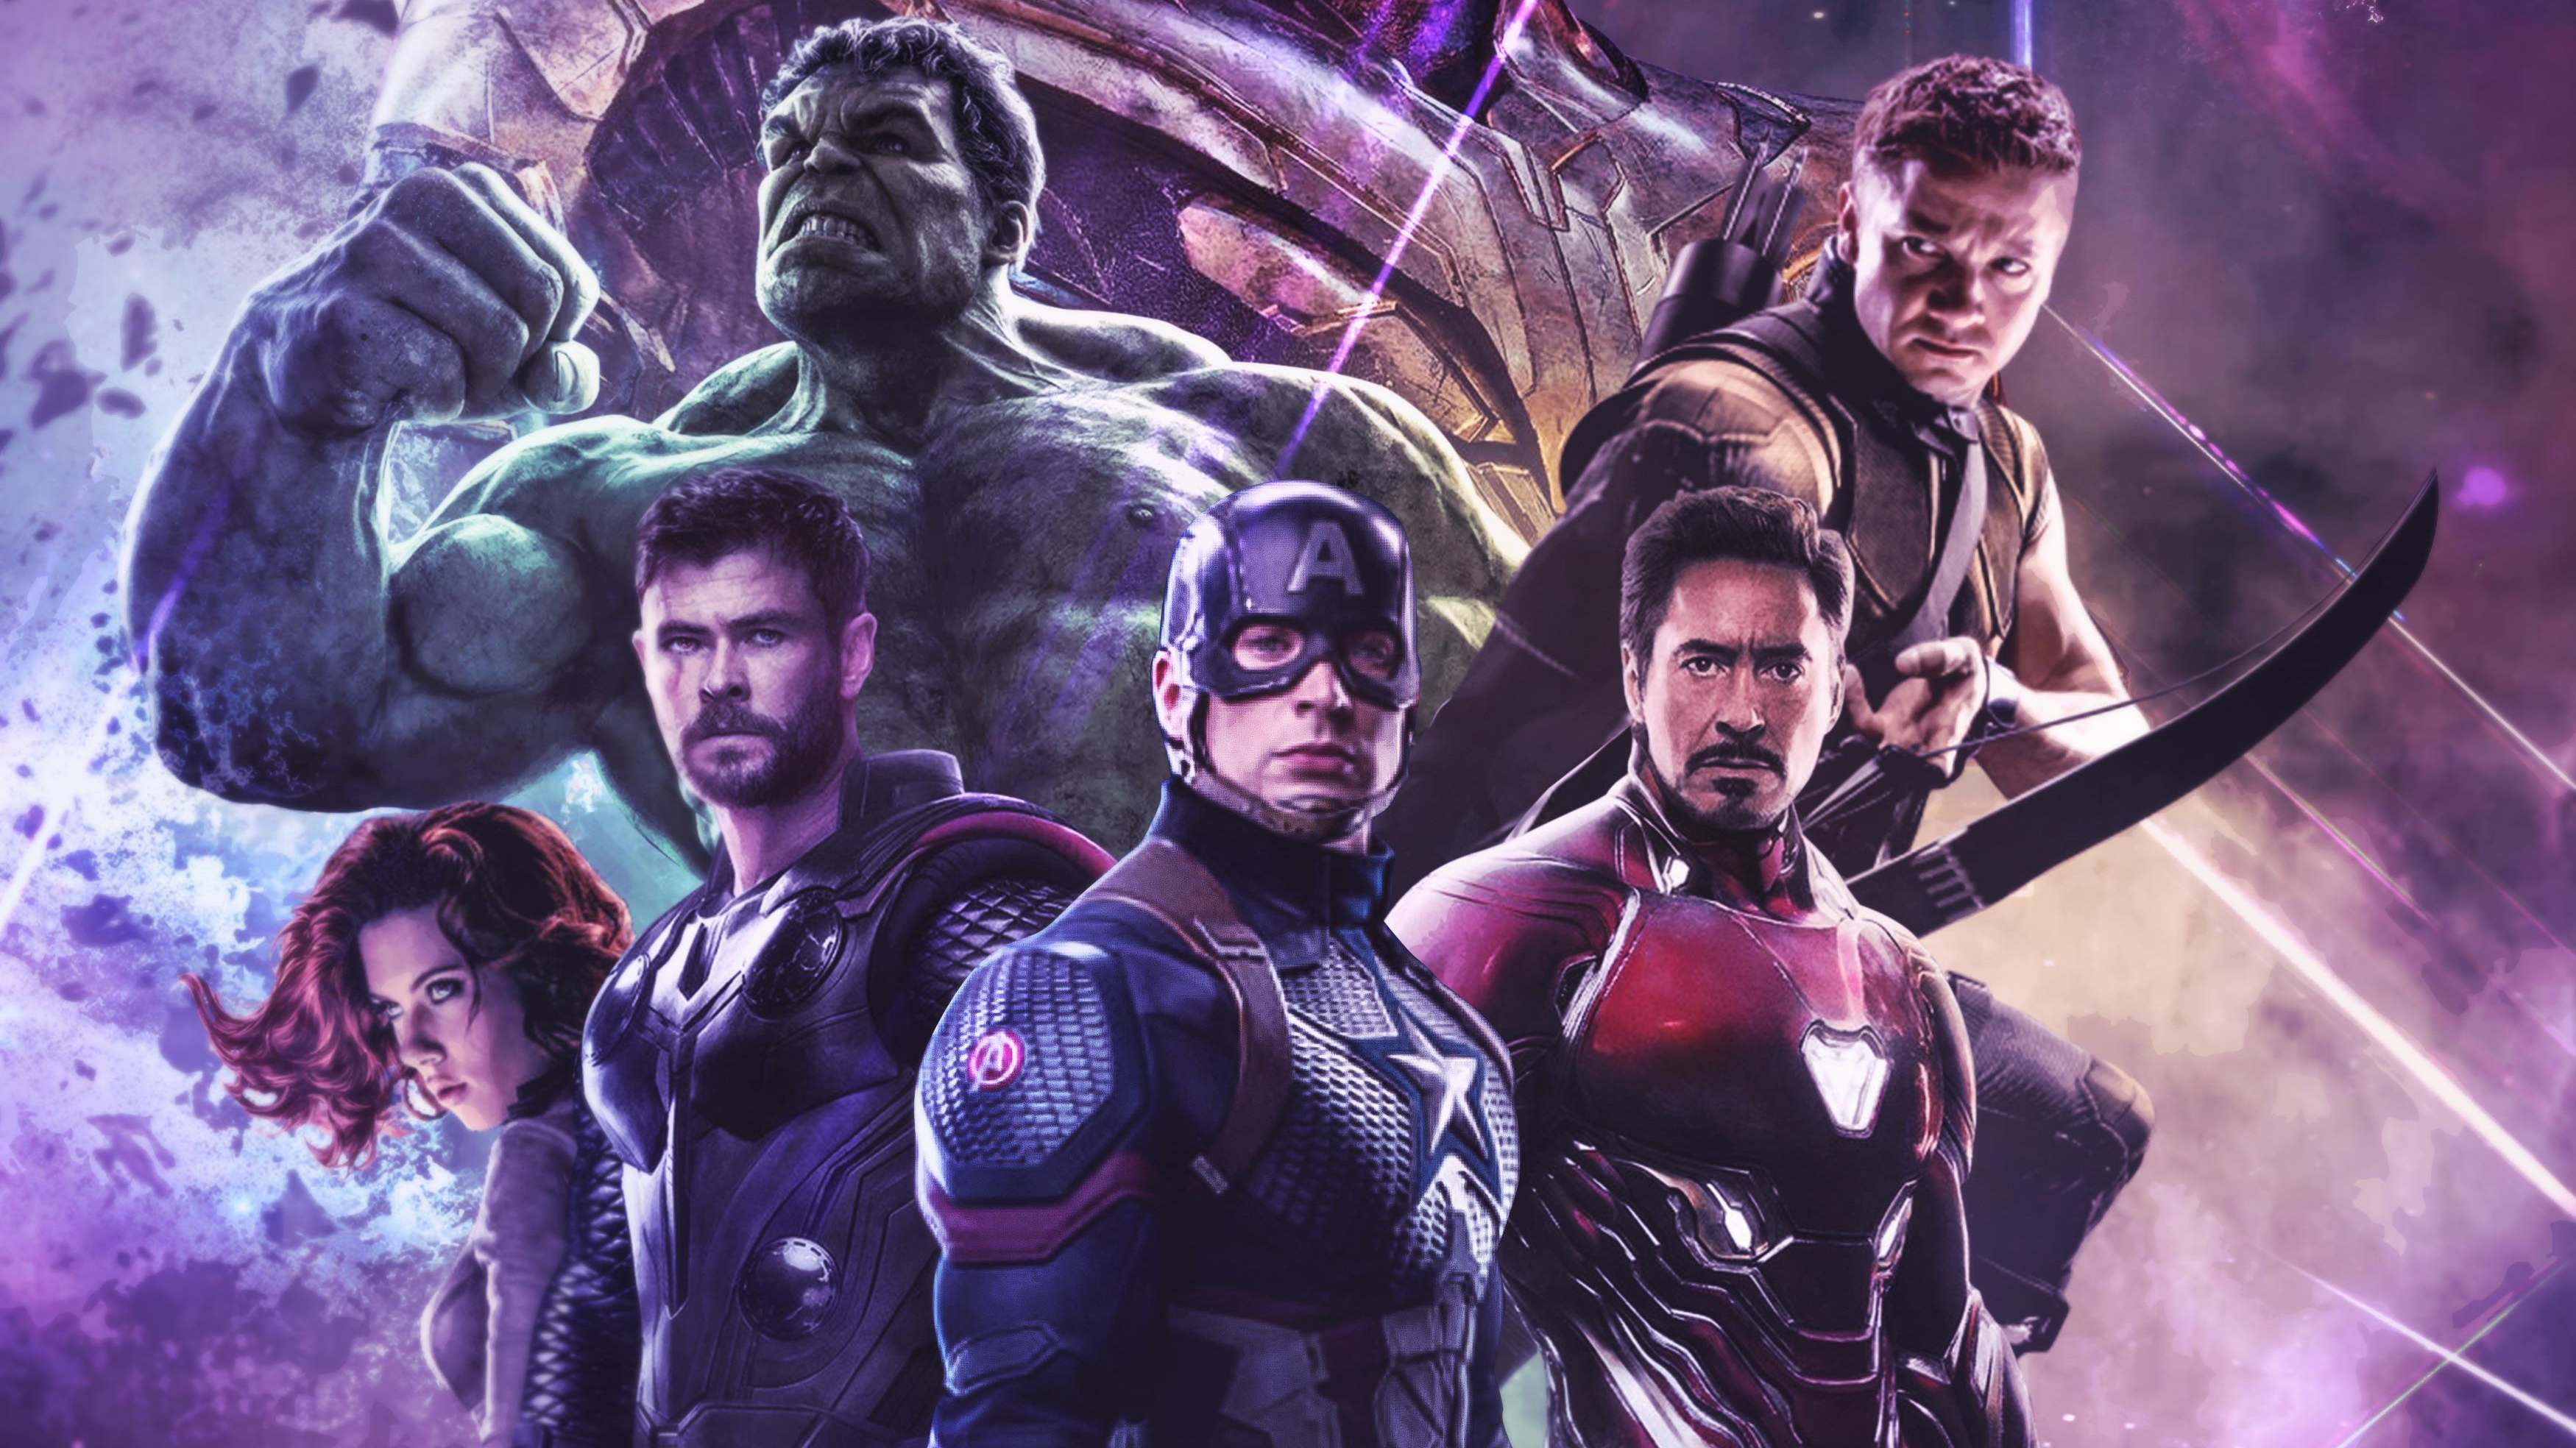 Avengers: Endgame: Đây là bộ phim phiên bản kết thúc của loạt phim siêu anh hùng nổi tiếng nhất của Marvel. Không chỉ mang đến cho khán giả một câu chuyện kết thúc hoàn hảo, Avengers: Endgame còn thành công khi tái hiện lại những trận chiến đa đỉnh cao nhất của siêu anh hùng và khiến các fan Marvel không thể bỏ lỡ.